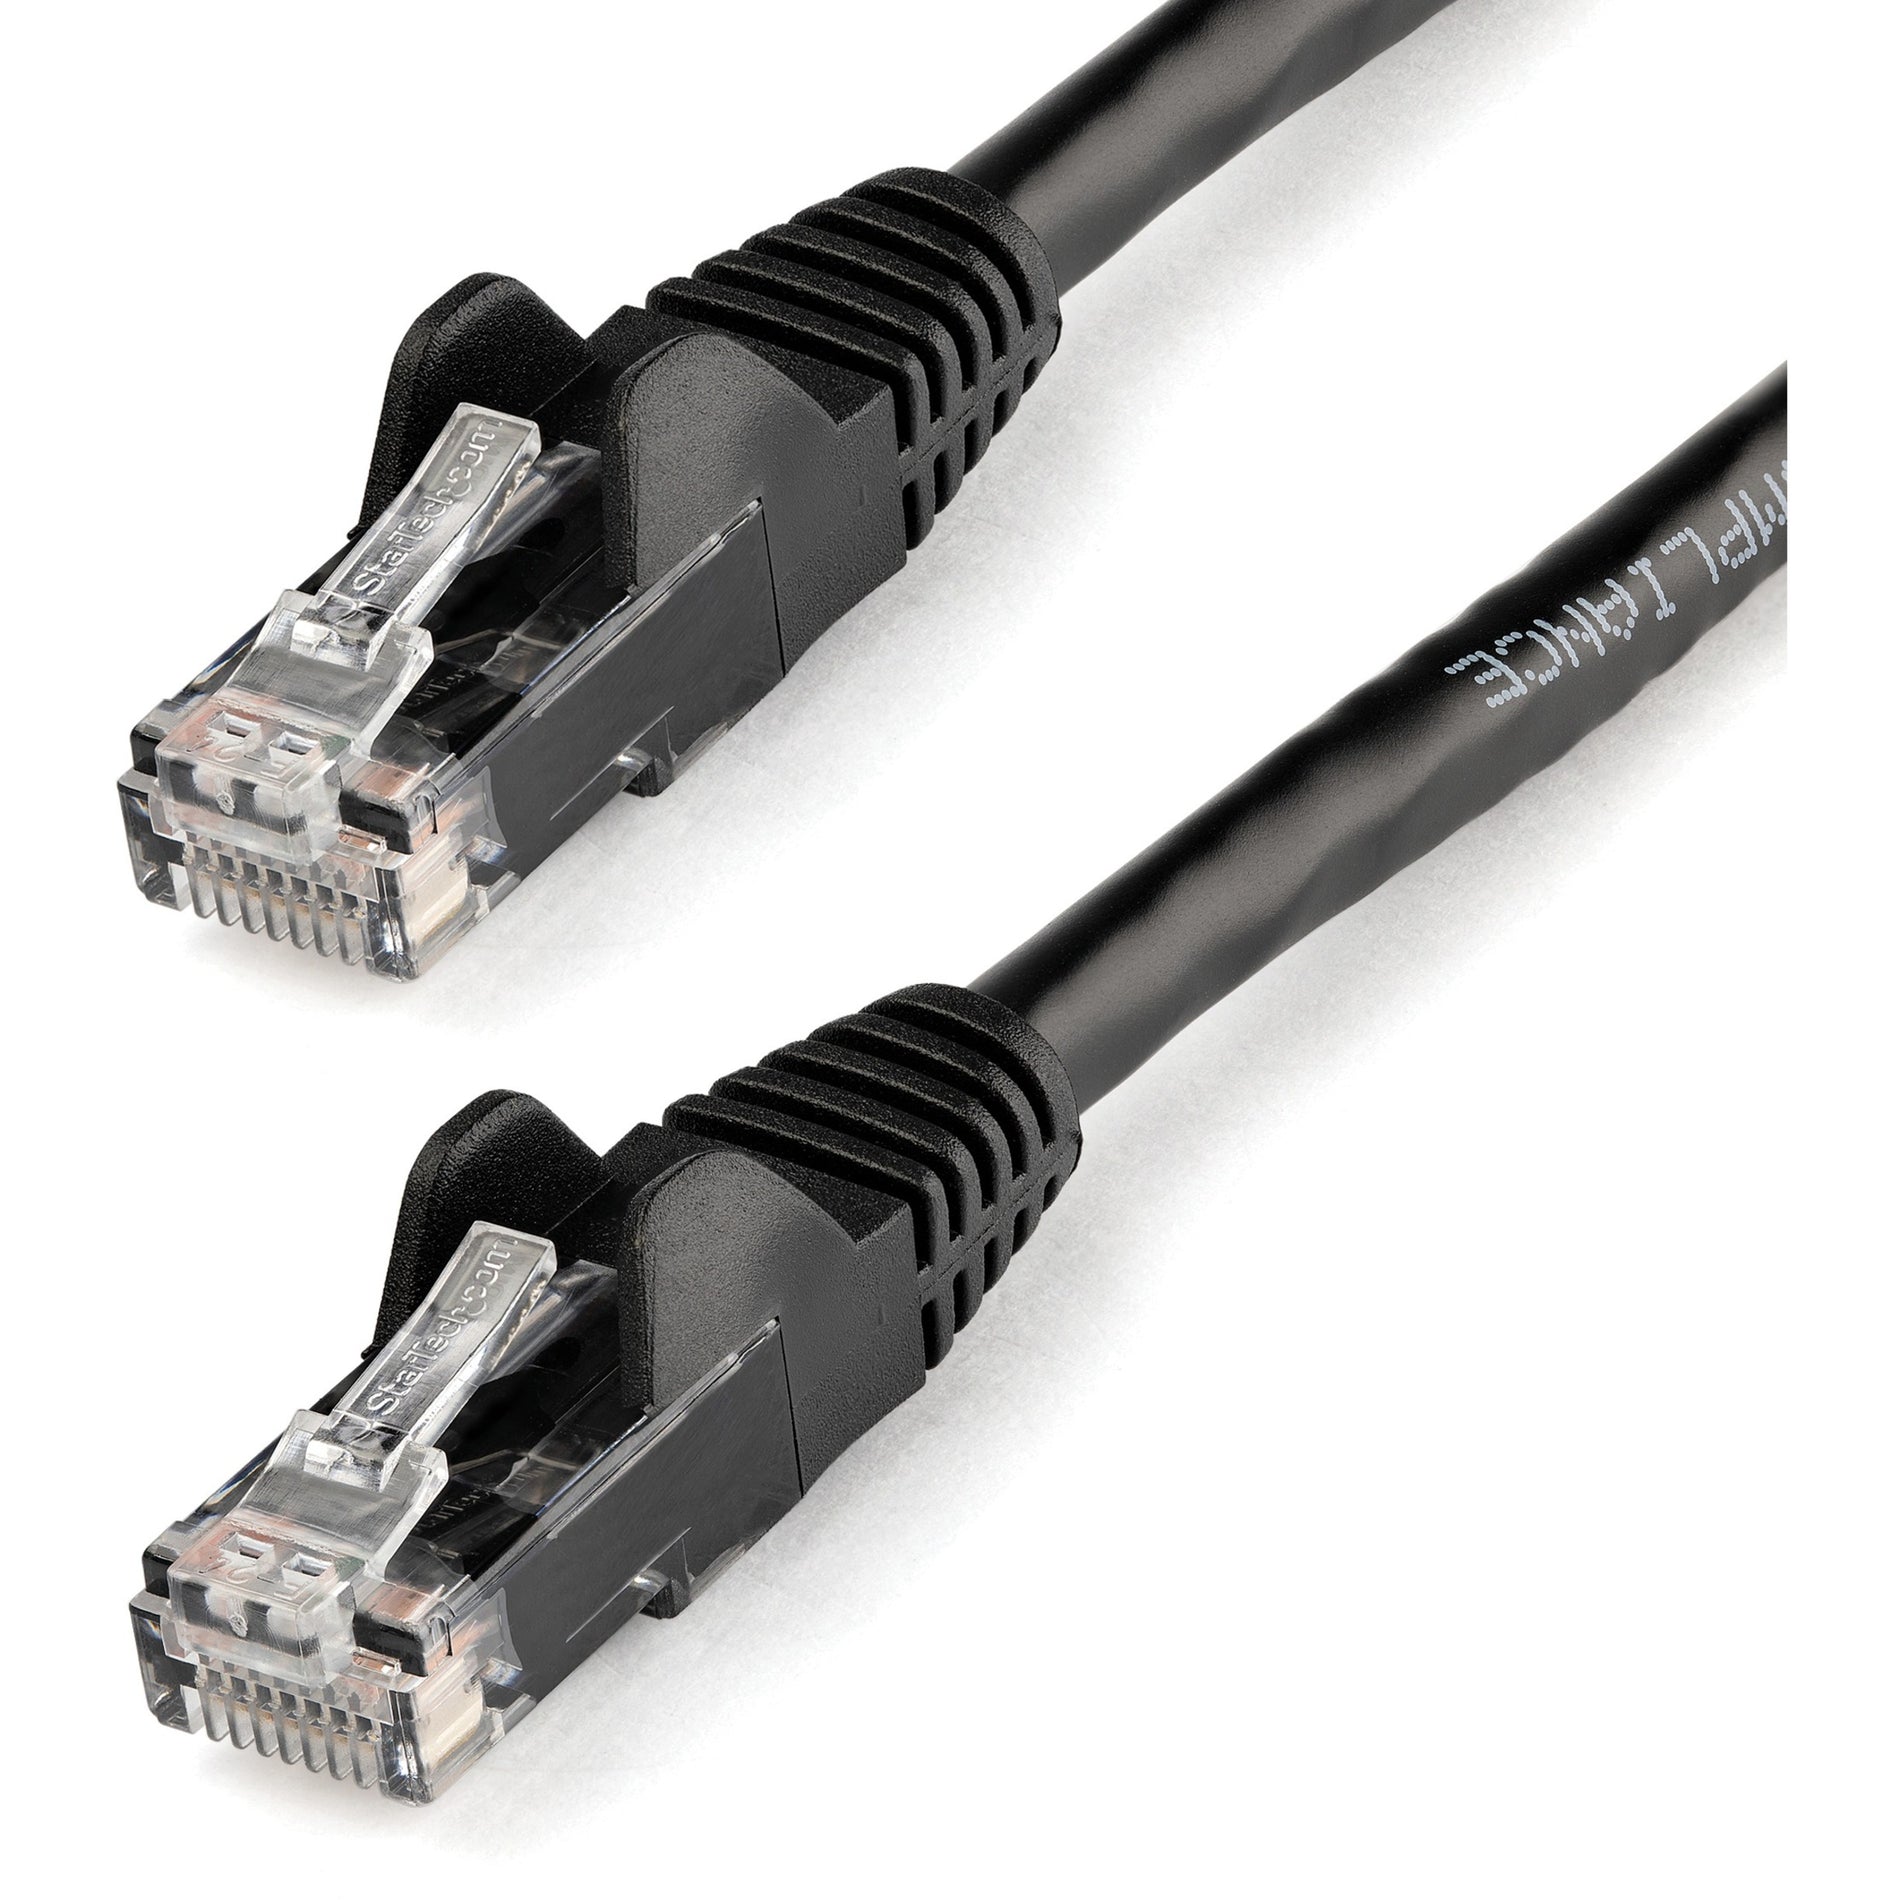 星路科技 StarTech.com N6PATCH14BK Cat6 补丁电缆，14英尺 黑色以太网电缆，防绞RJ45连接器